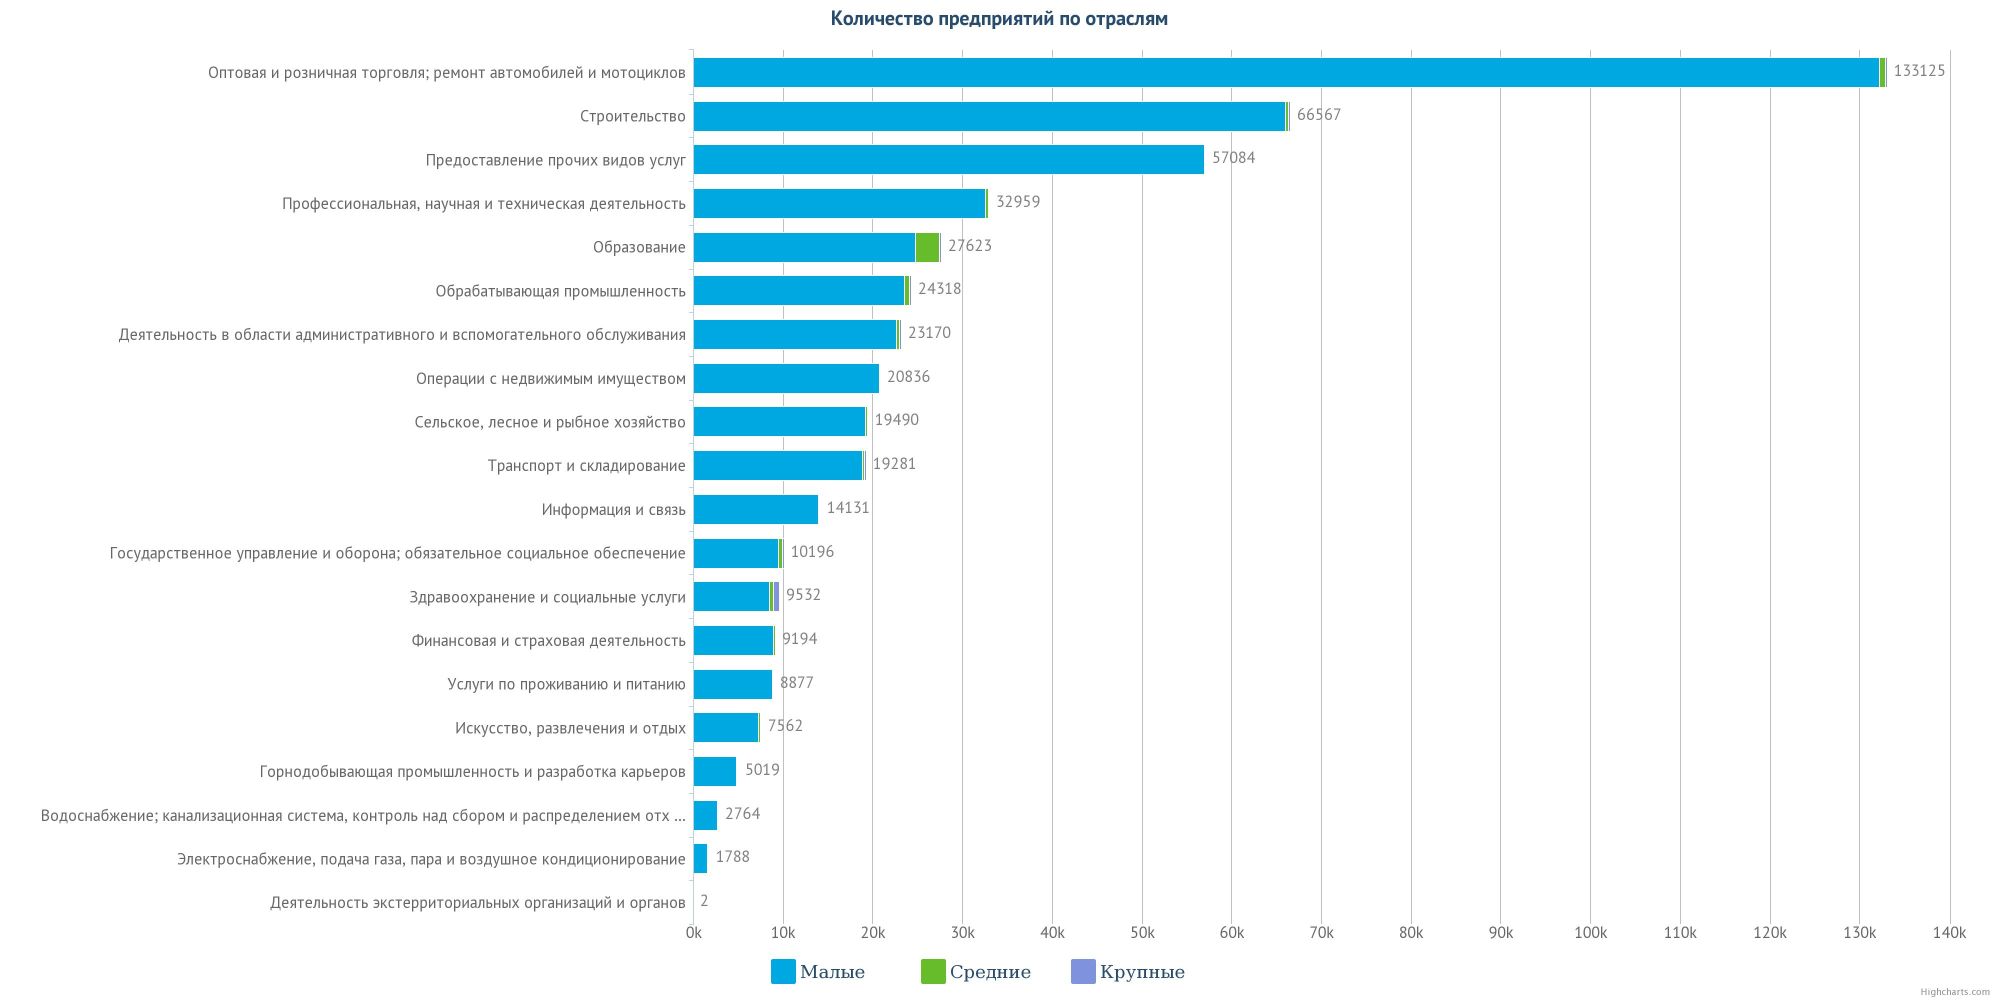 Общее  количество предприятий в Казахстане по отраслям